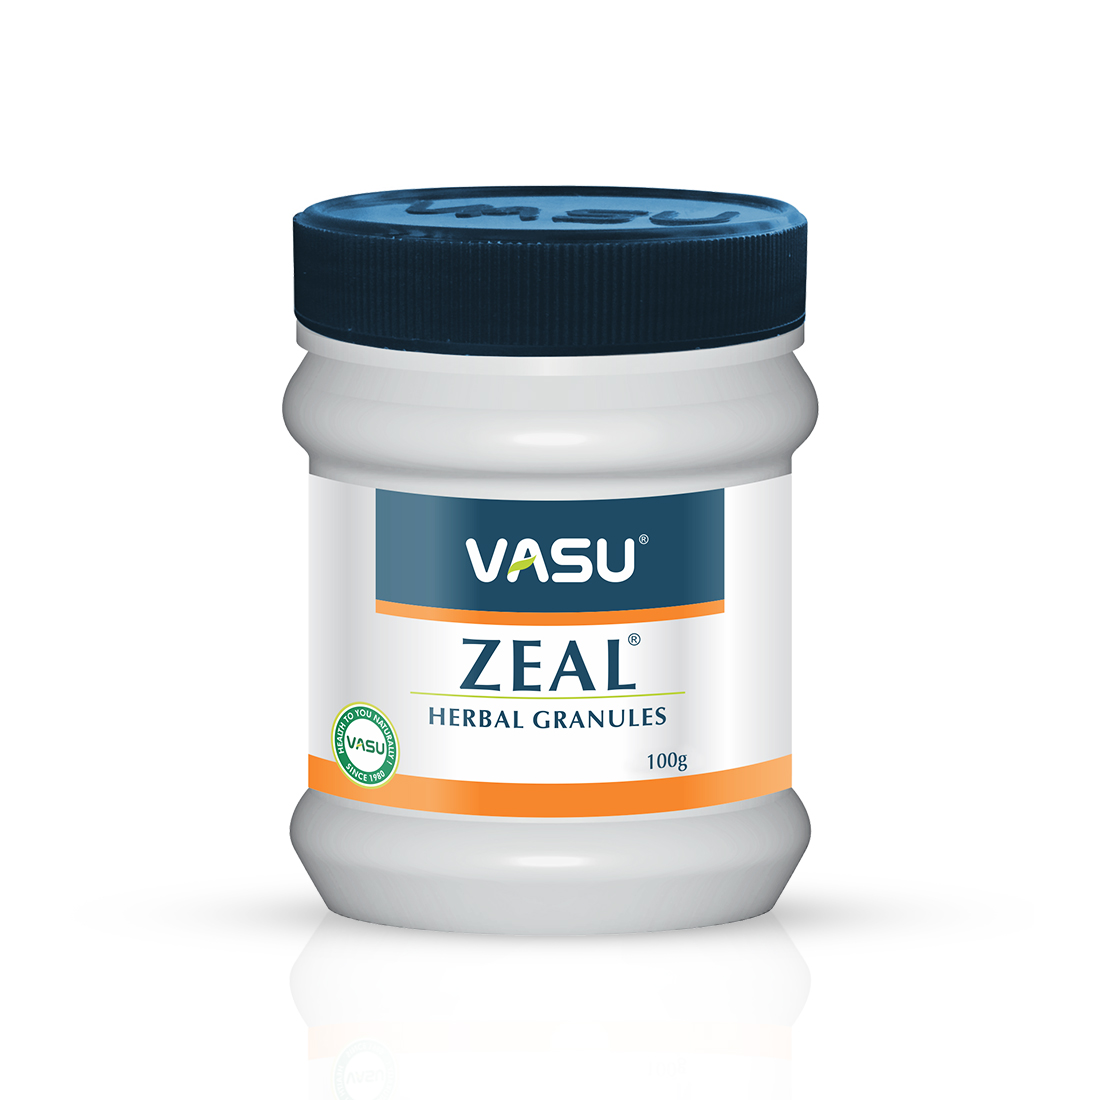 Buy Vasu Zeal Herbal Granules at Best Price Online